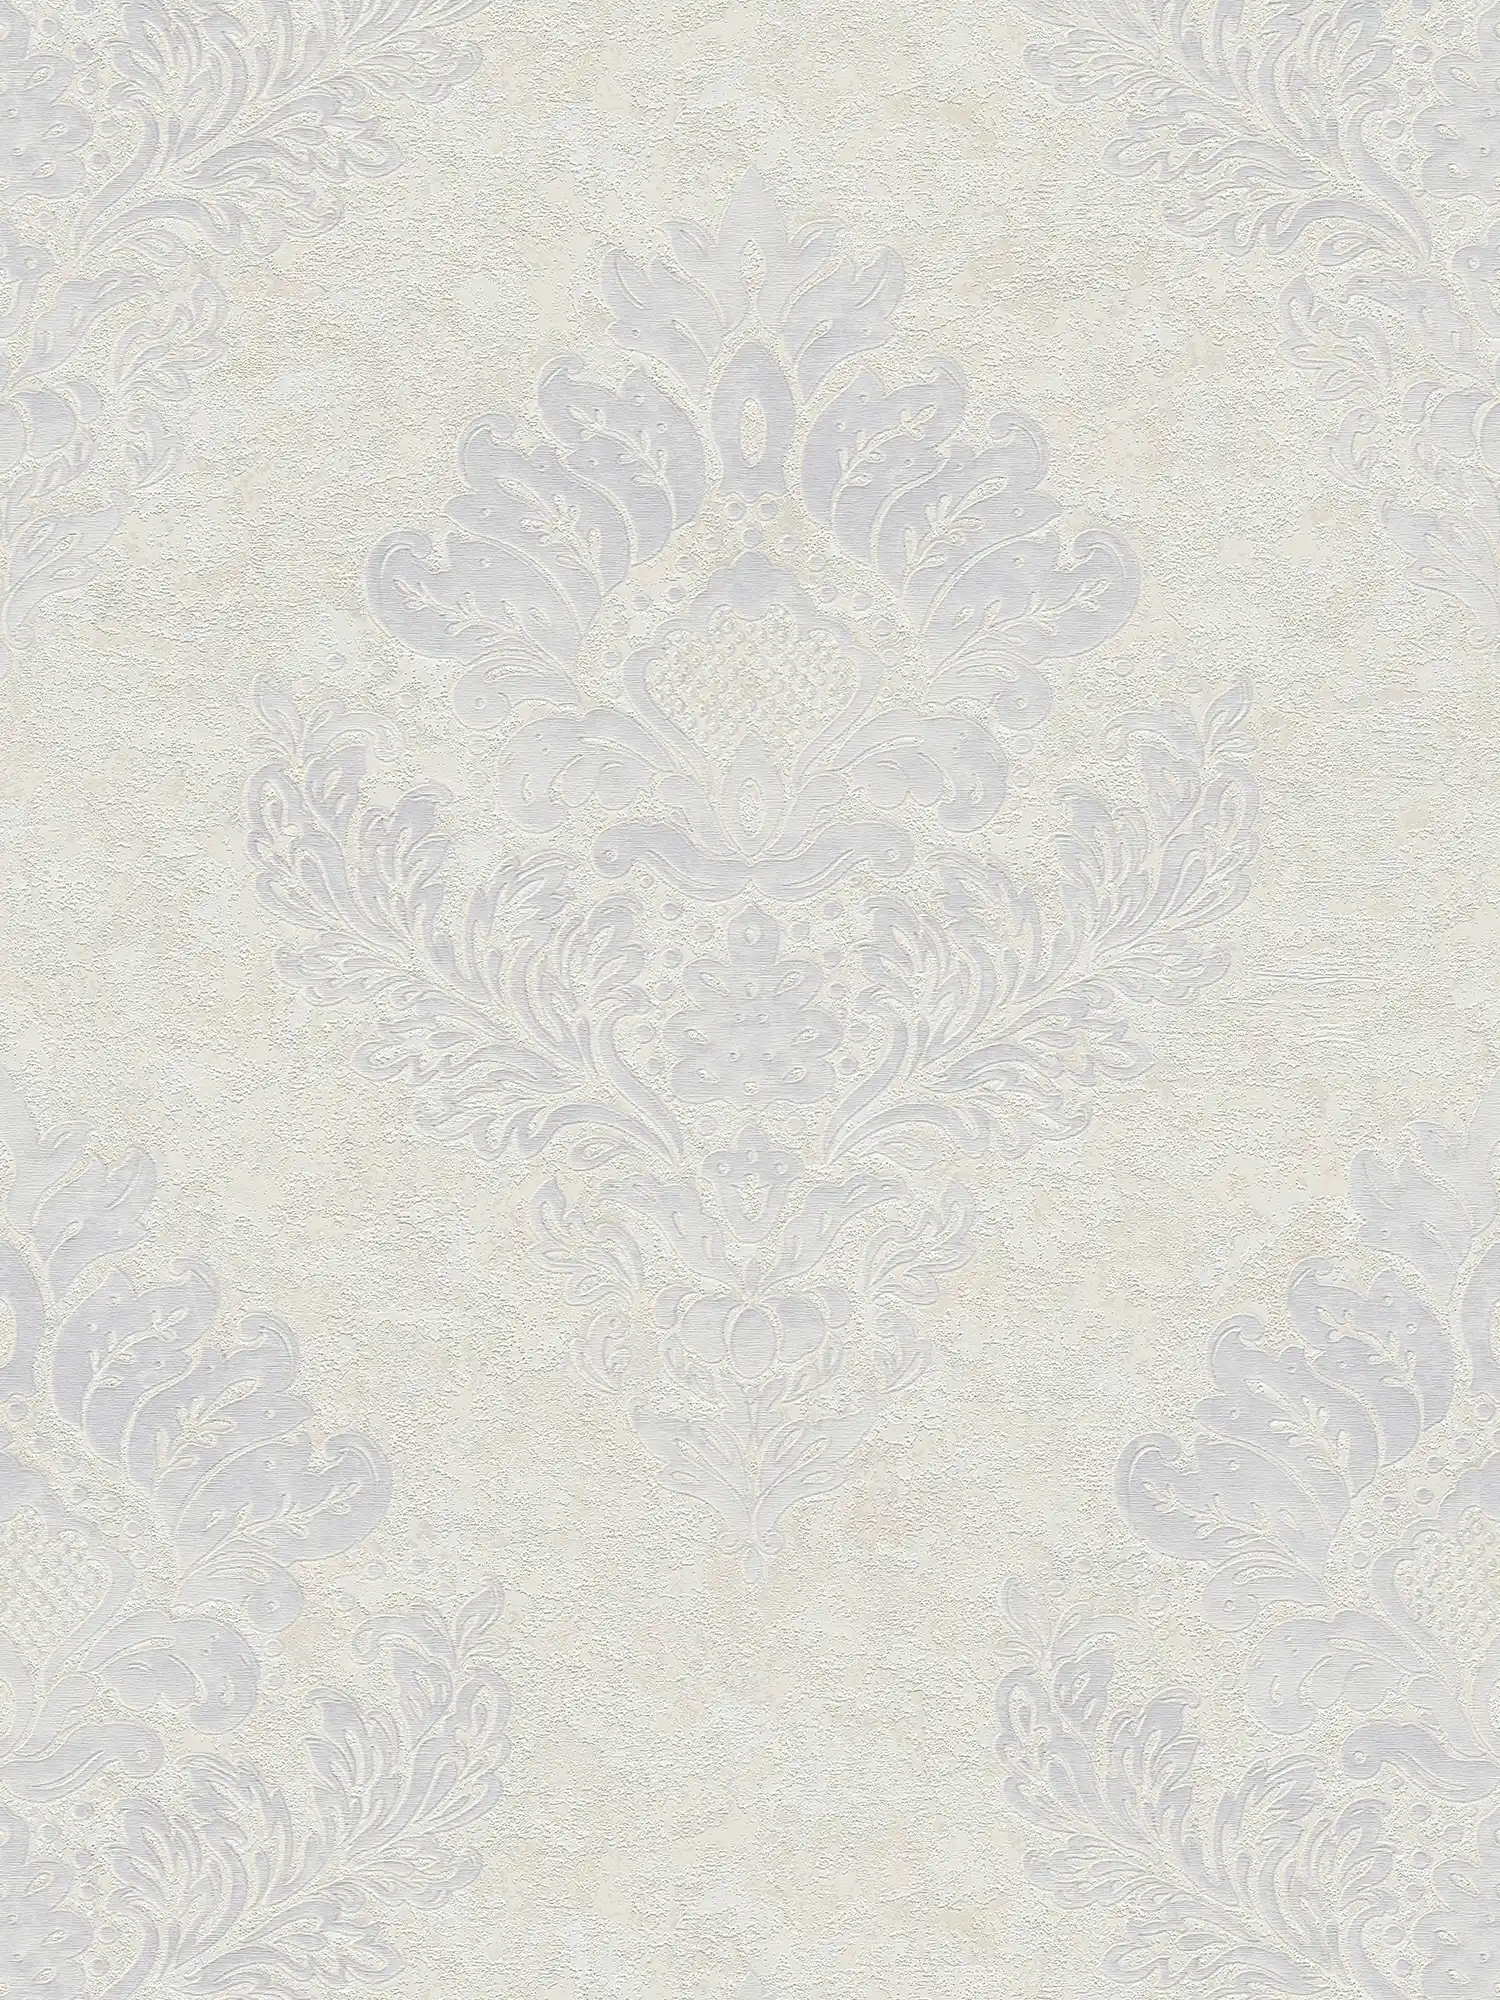 Papier peint intissé avec ornements floraux & éclat métallique - beige, gris, blanc
